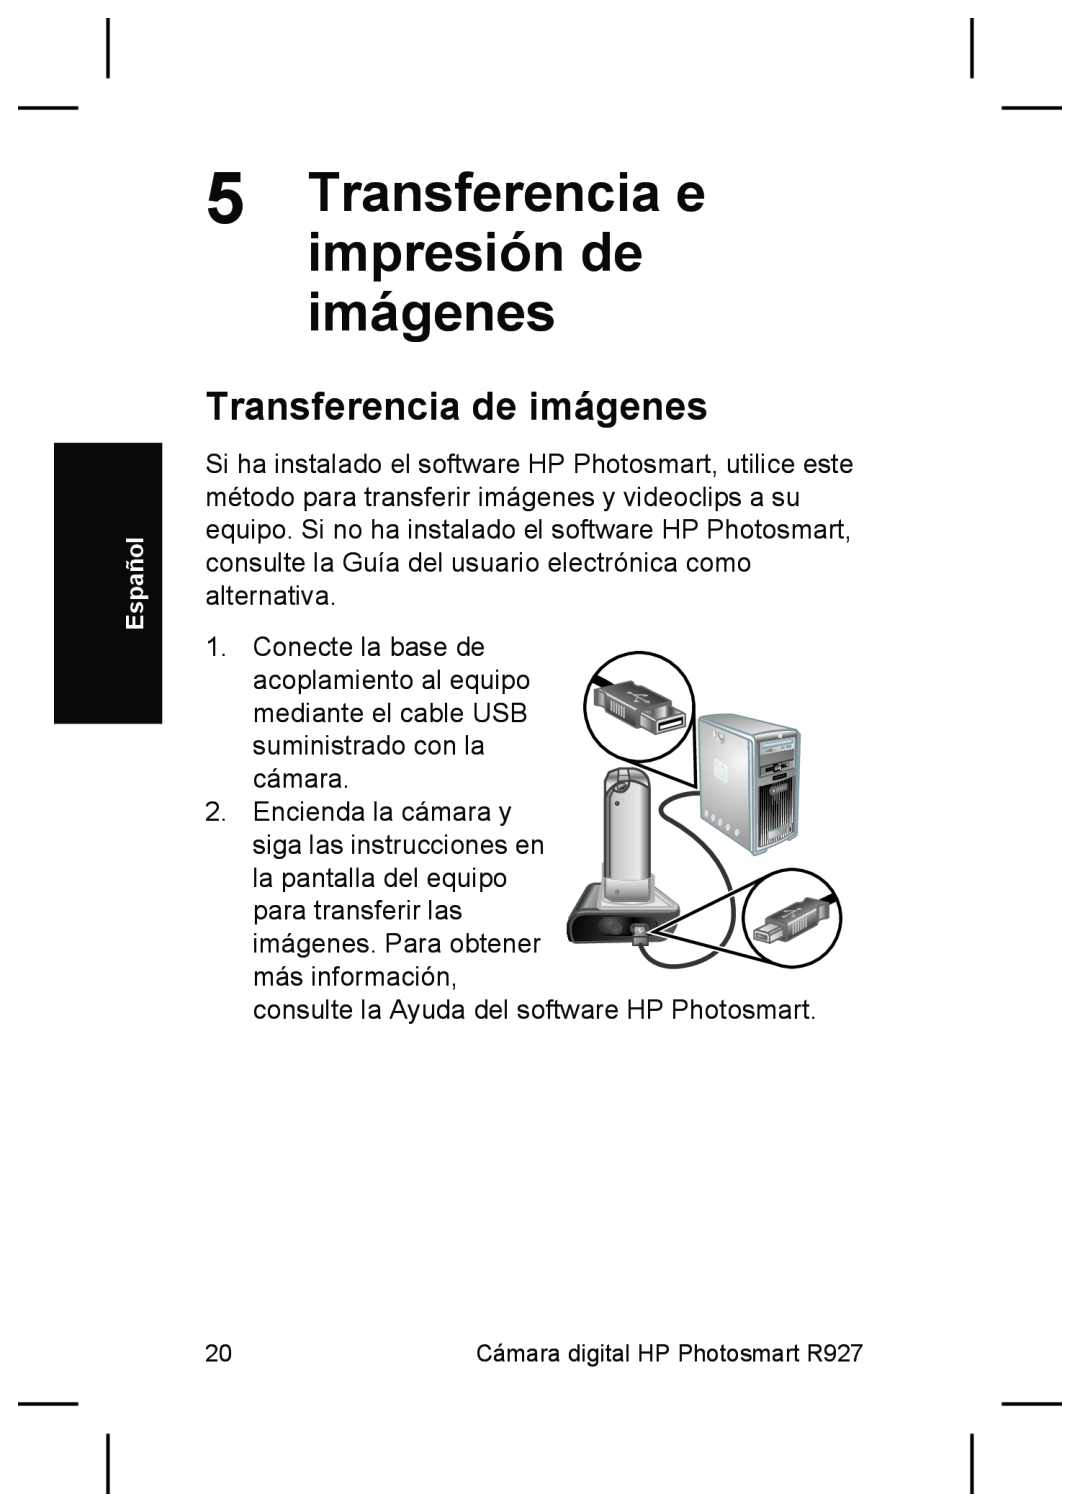 HP R927 manual Transferencia e impresión de imágenes, Transferencia de imágenes 